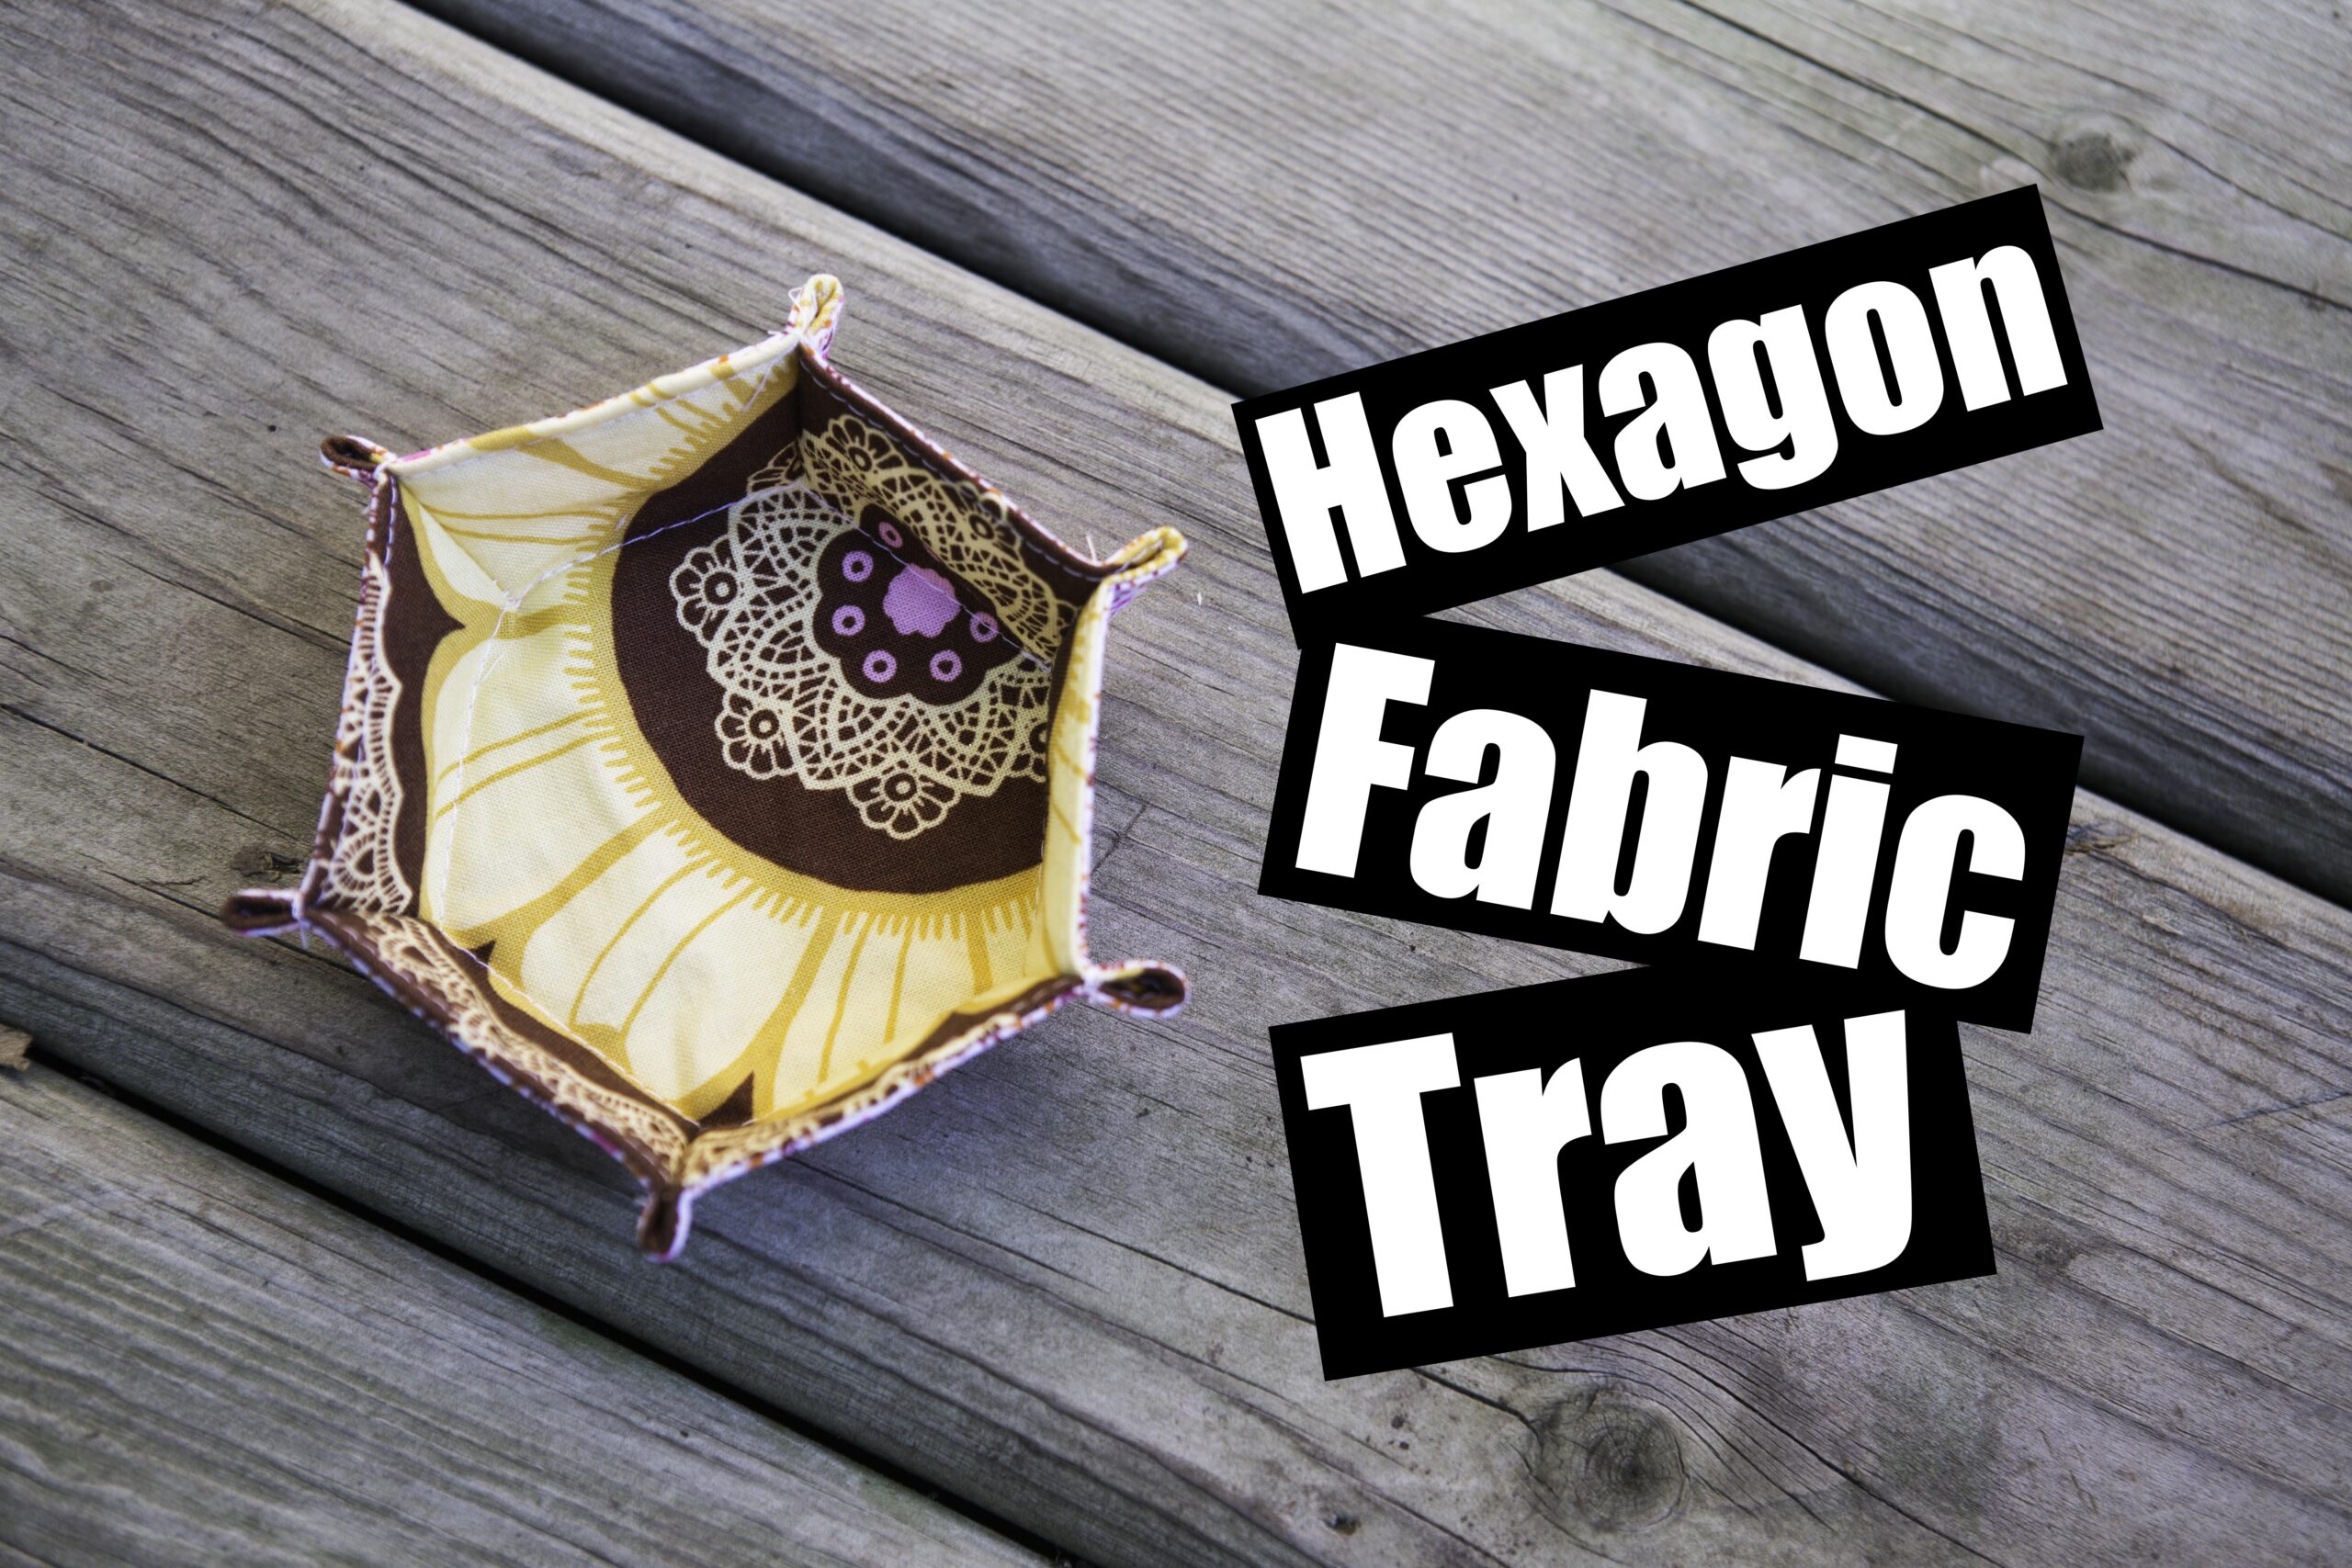 Hexagon Fabric Tray